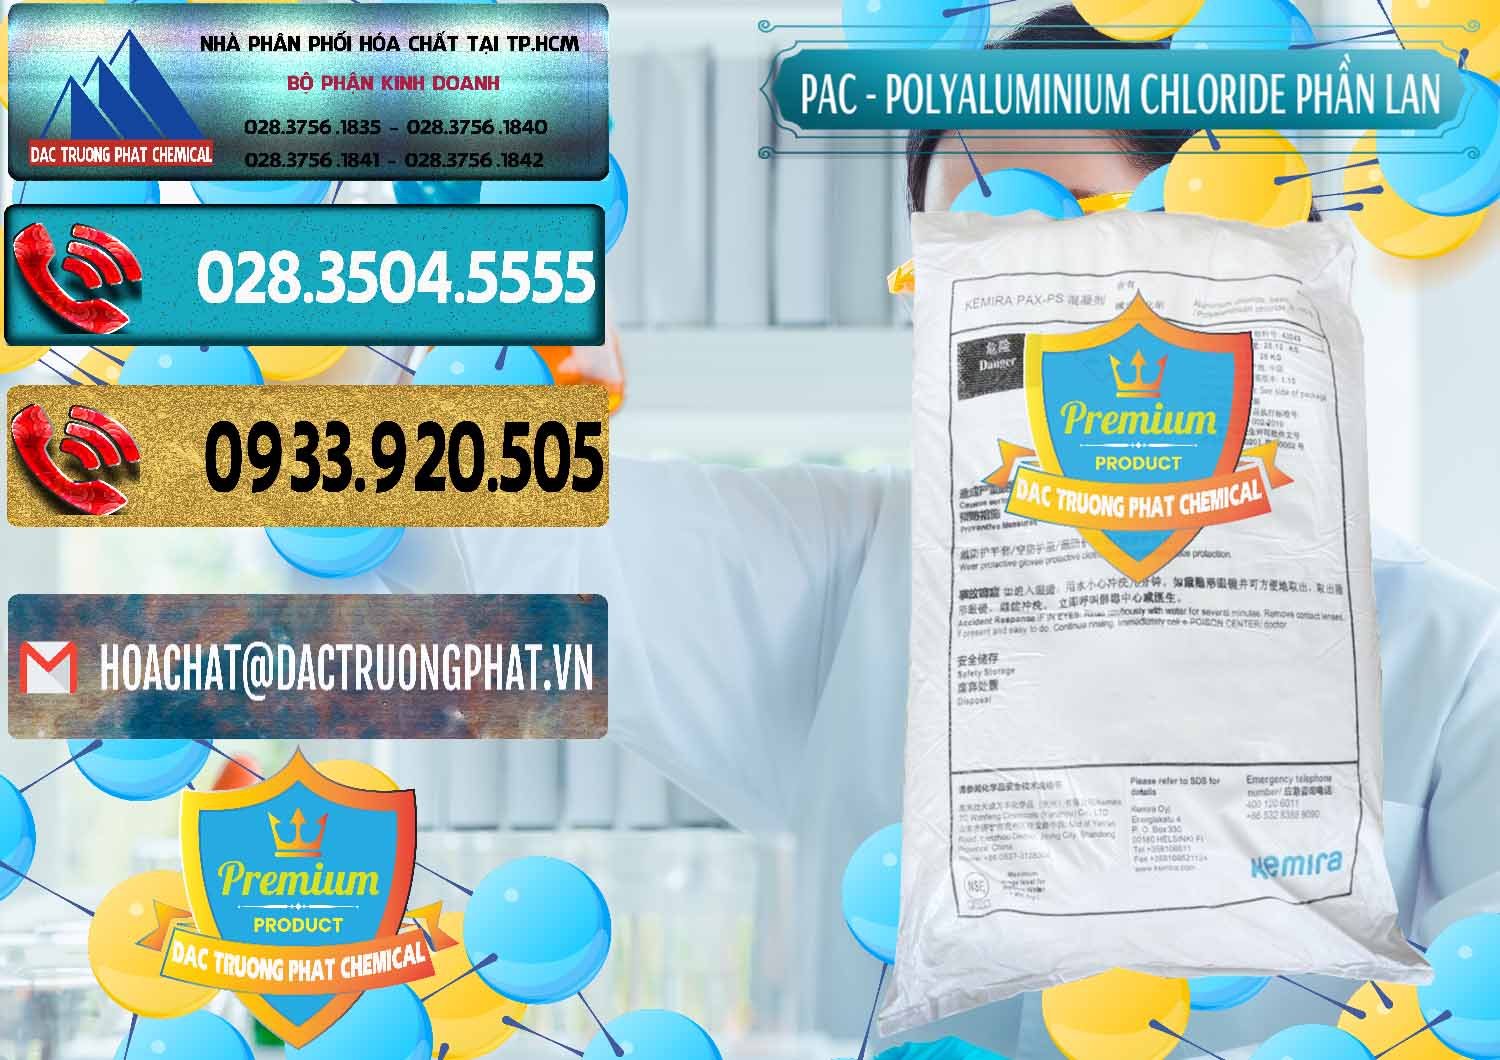 Cty chuyên phân phối và bán PAC - Polyaluminium Chloride Phần Lan Finland - 0383 - Công ty bán & phân phối hóa chất tại TP.HCM - hoachatdetnhuom.com